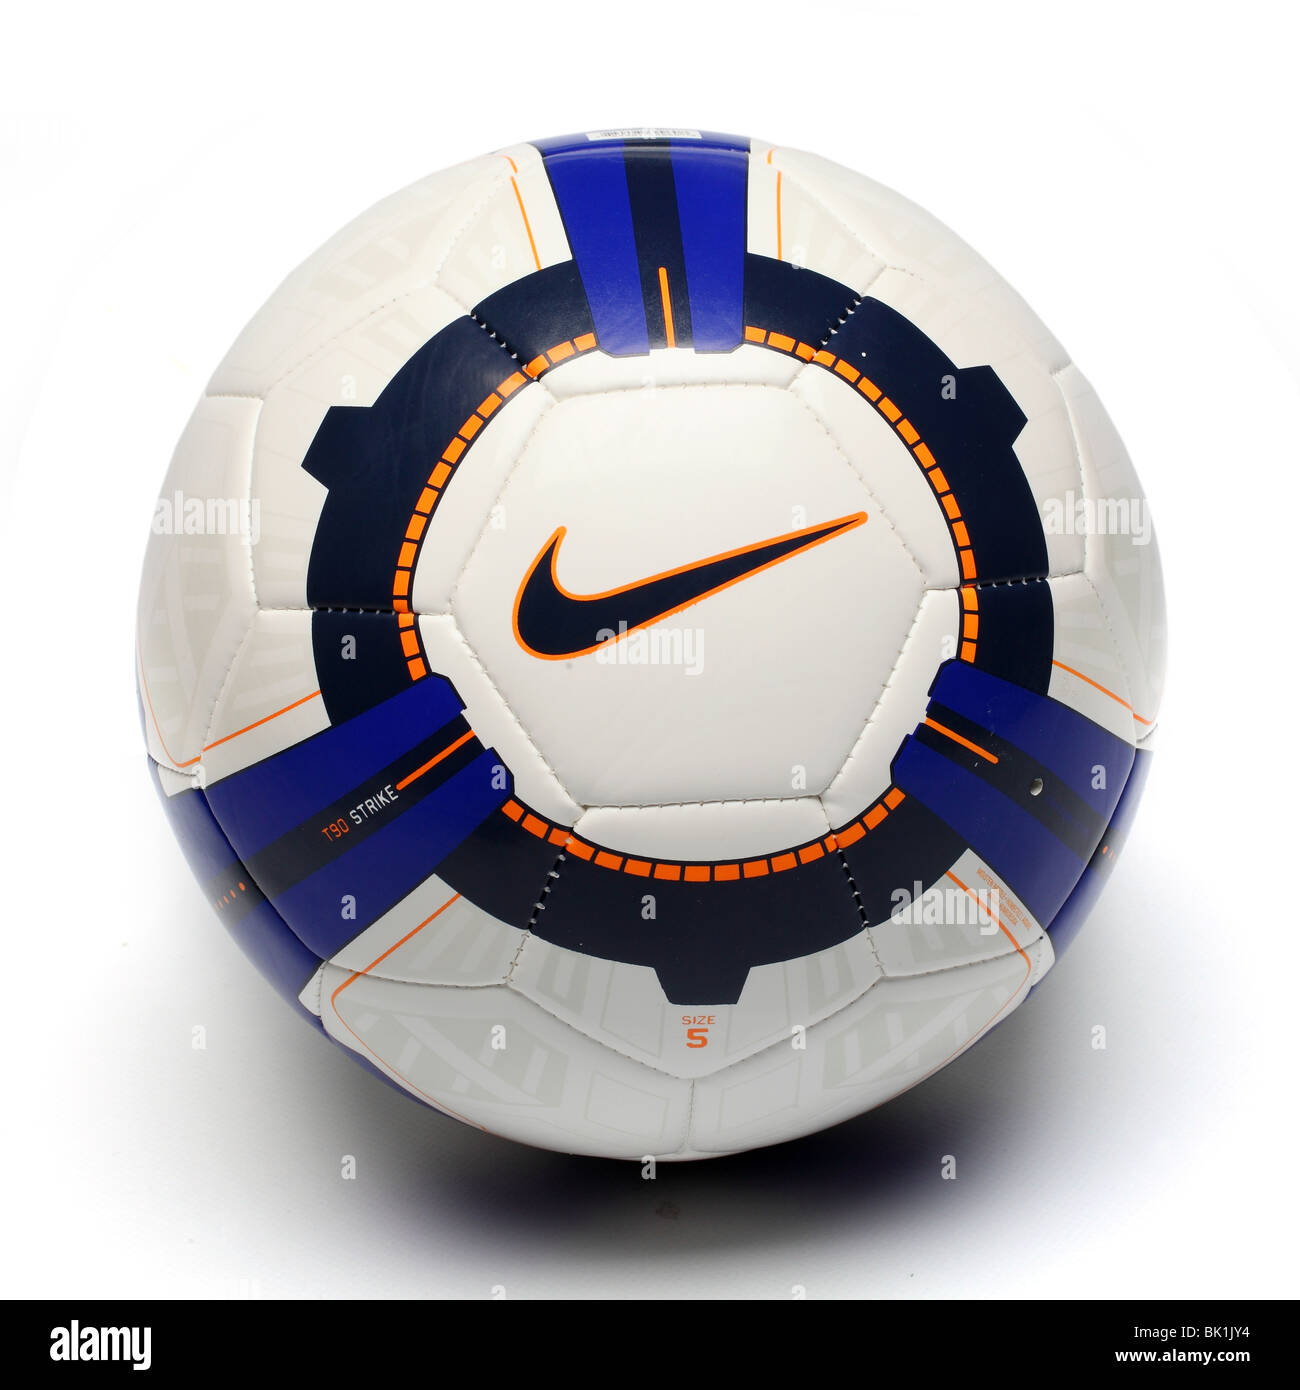 L'équipe de foot ball Nike Football club de soccer sport circle globe logo circulaire côté de l'équipe de l'équipement de vie jouent trophée tribu Banque D'Images